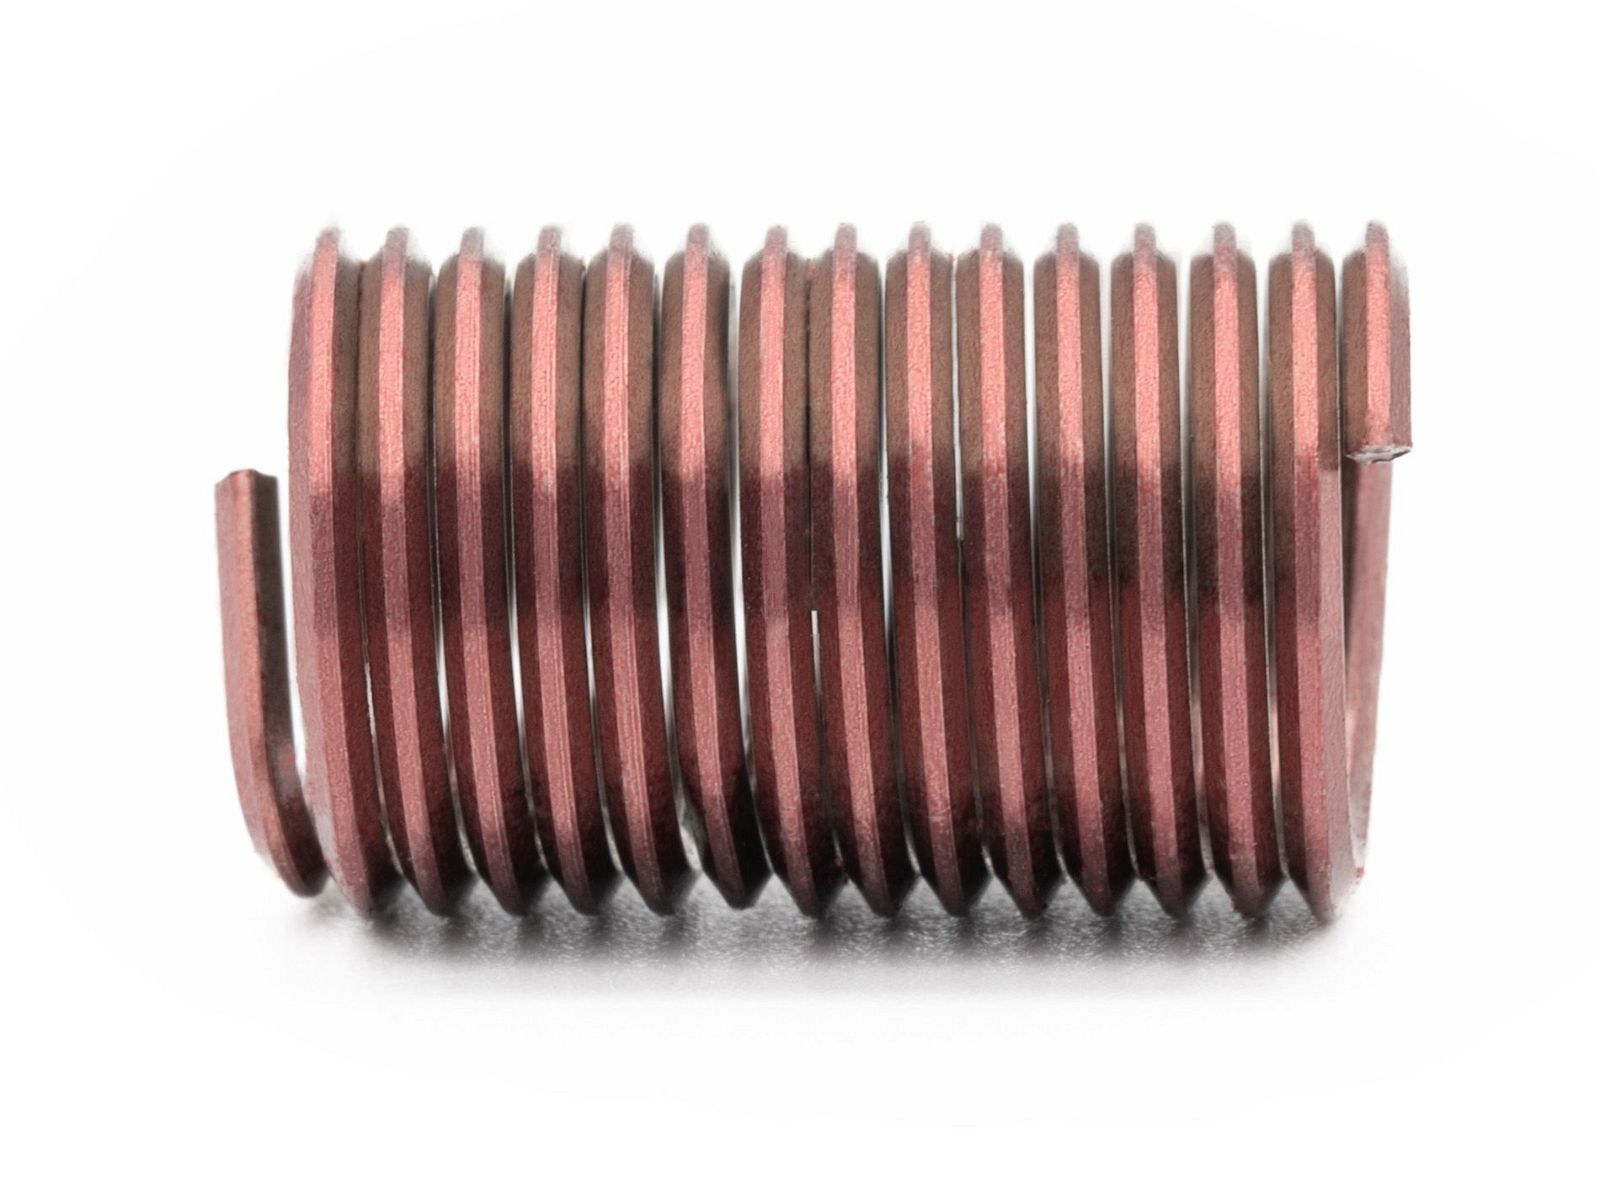 BaerCoil Wire Thread Inserts M 10 x 1.5 - 2.5 D (25 mm) - screw grip (screw locking) - 10 pcs.